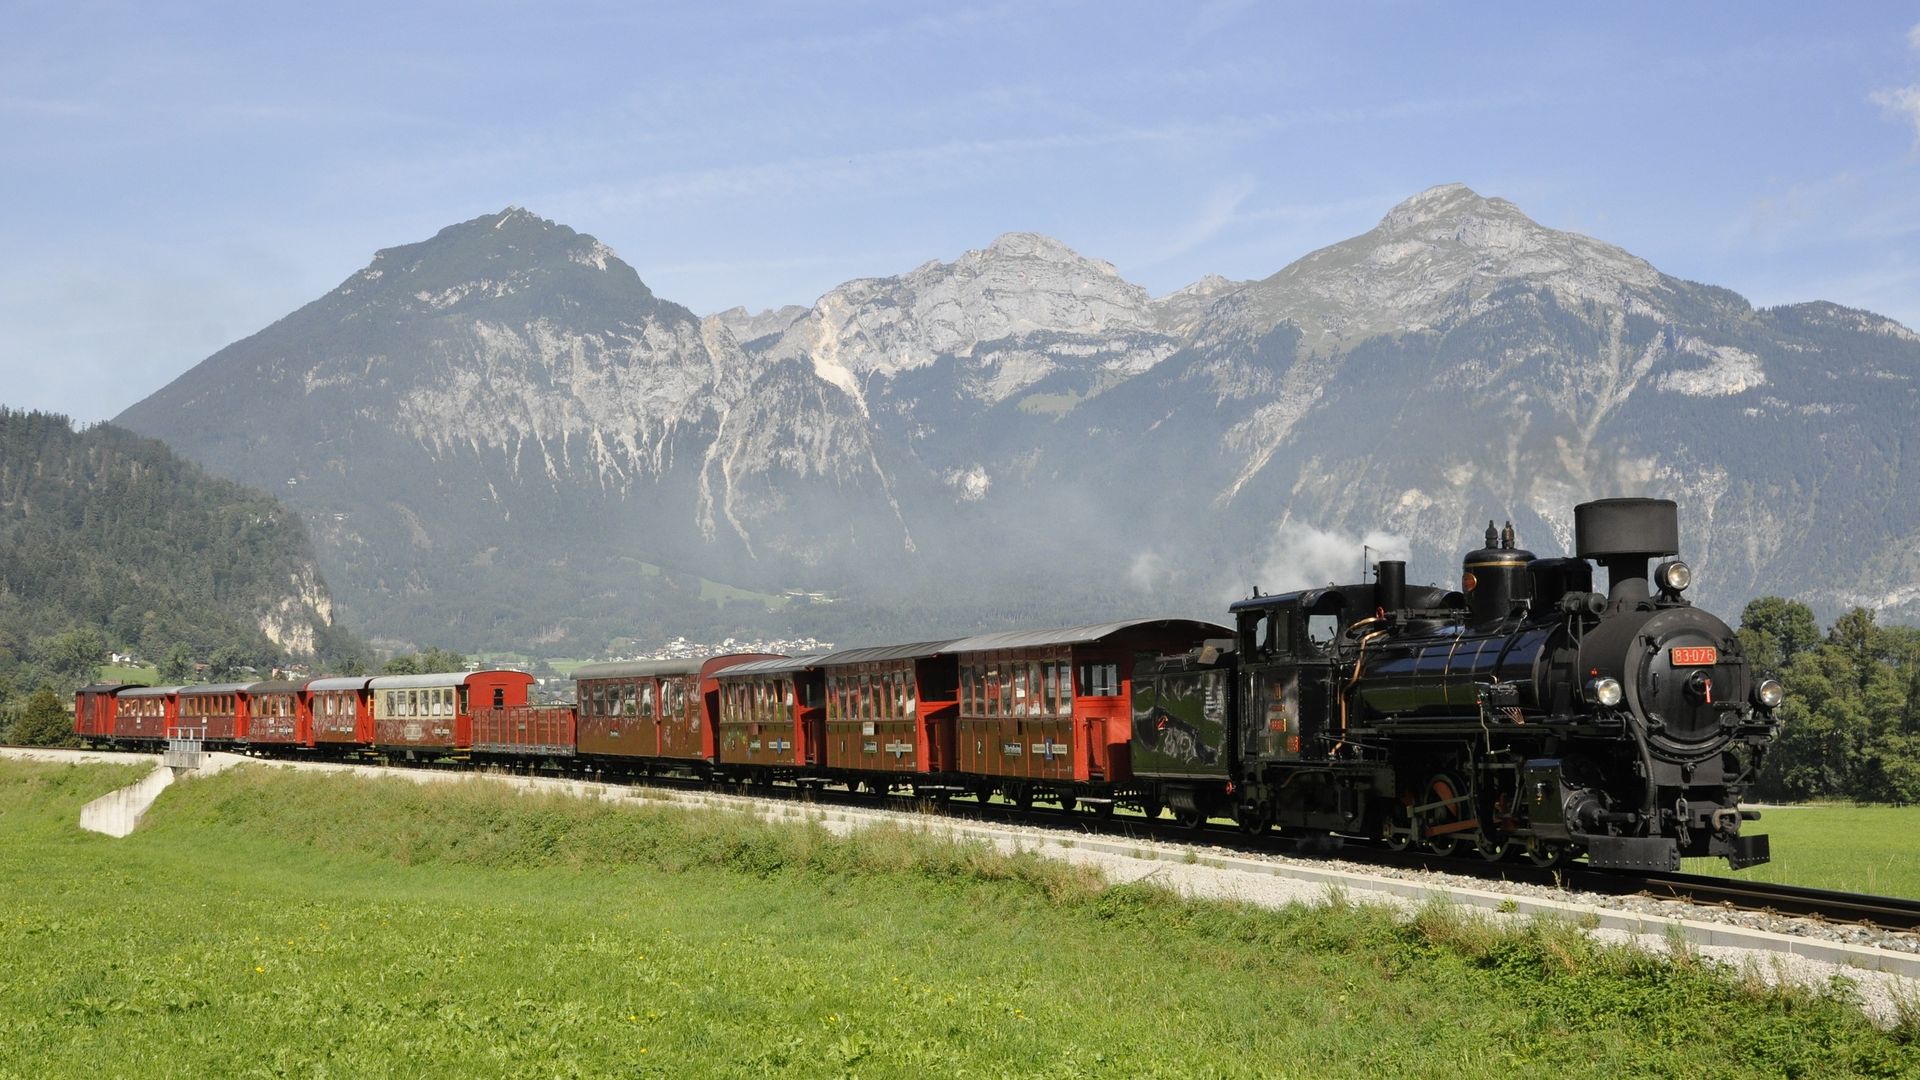 Zillertalbahn Heritage Train